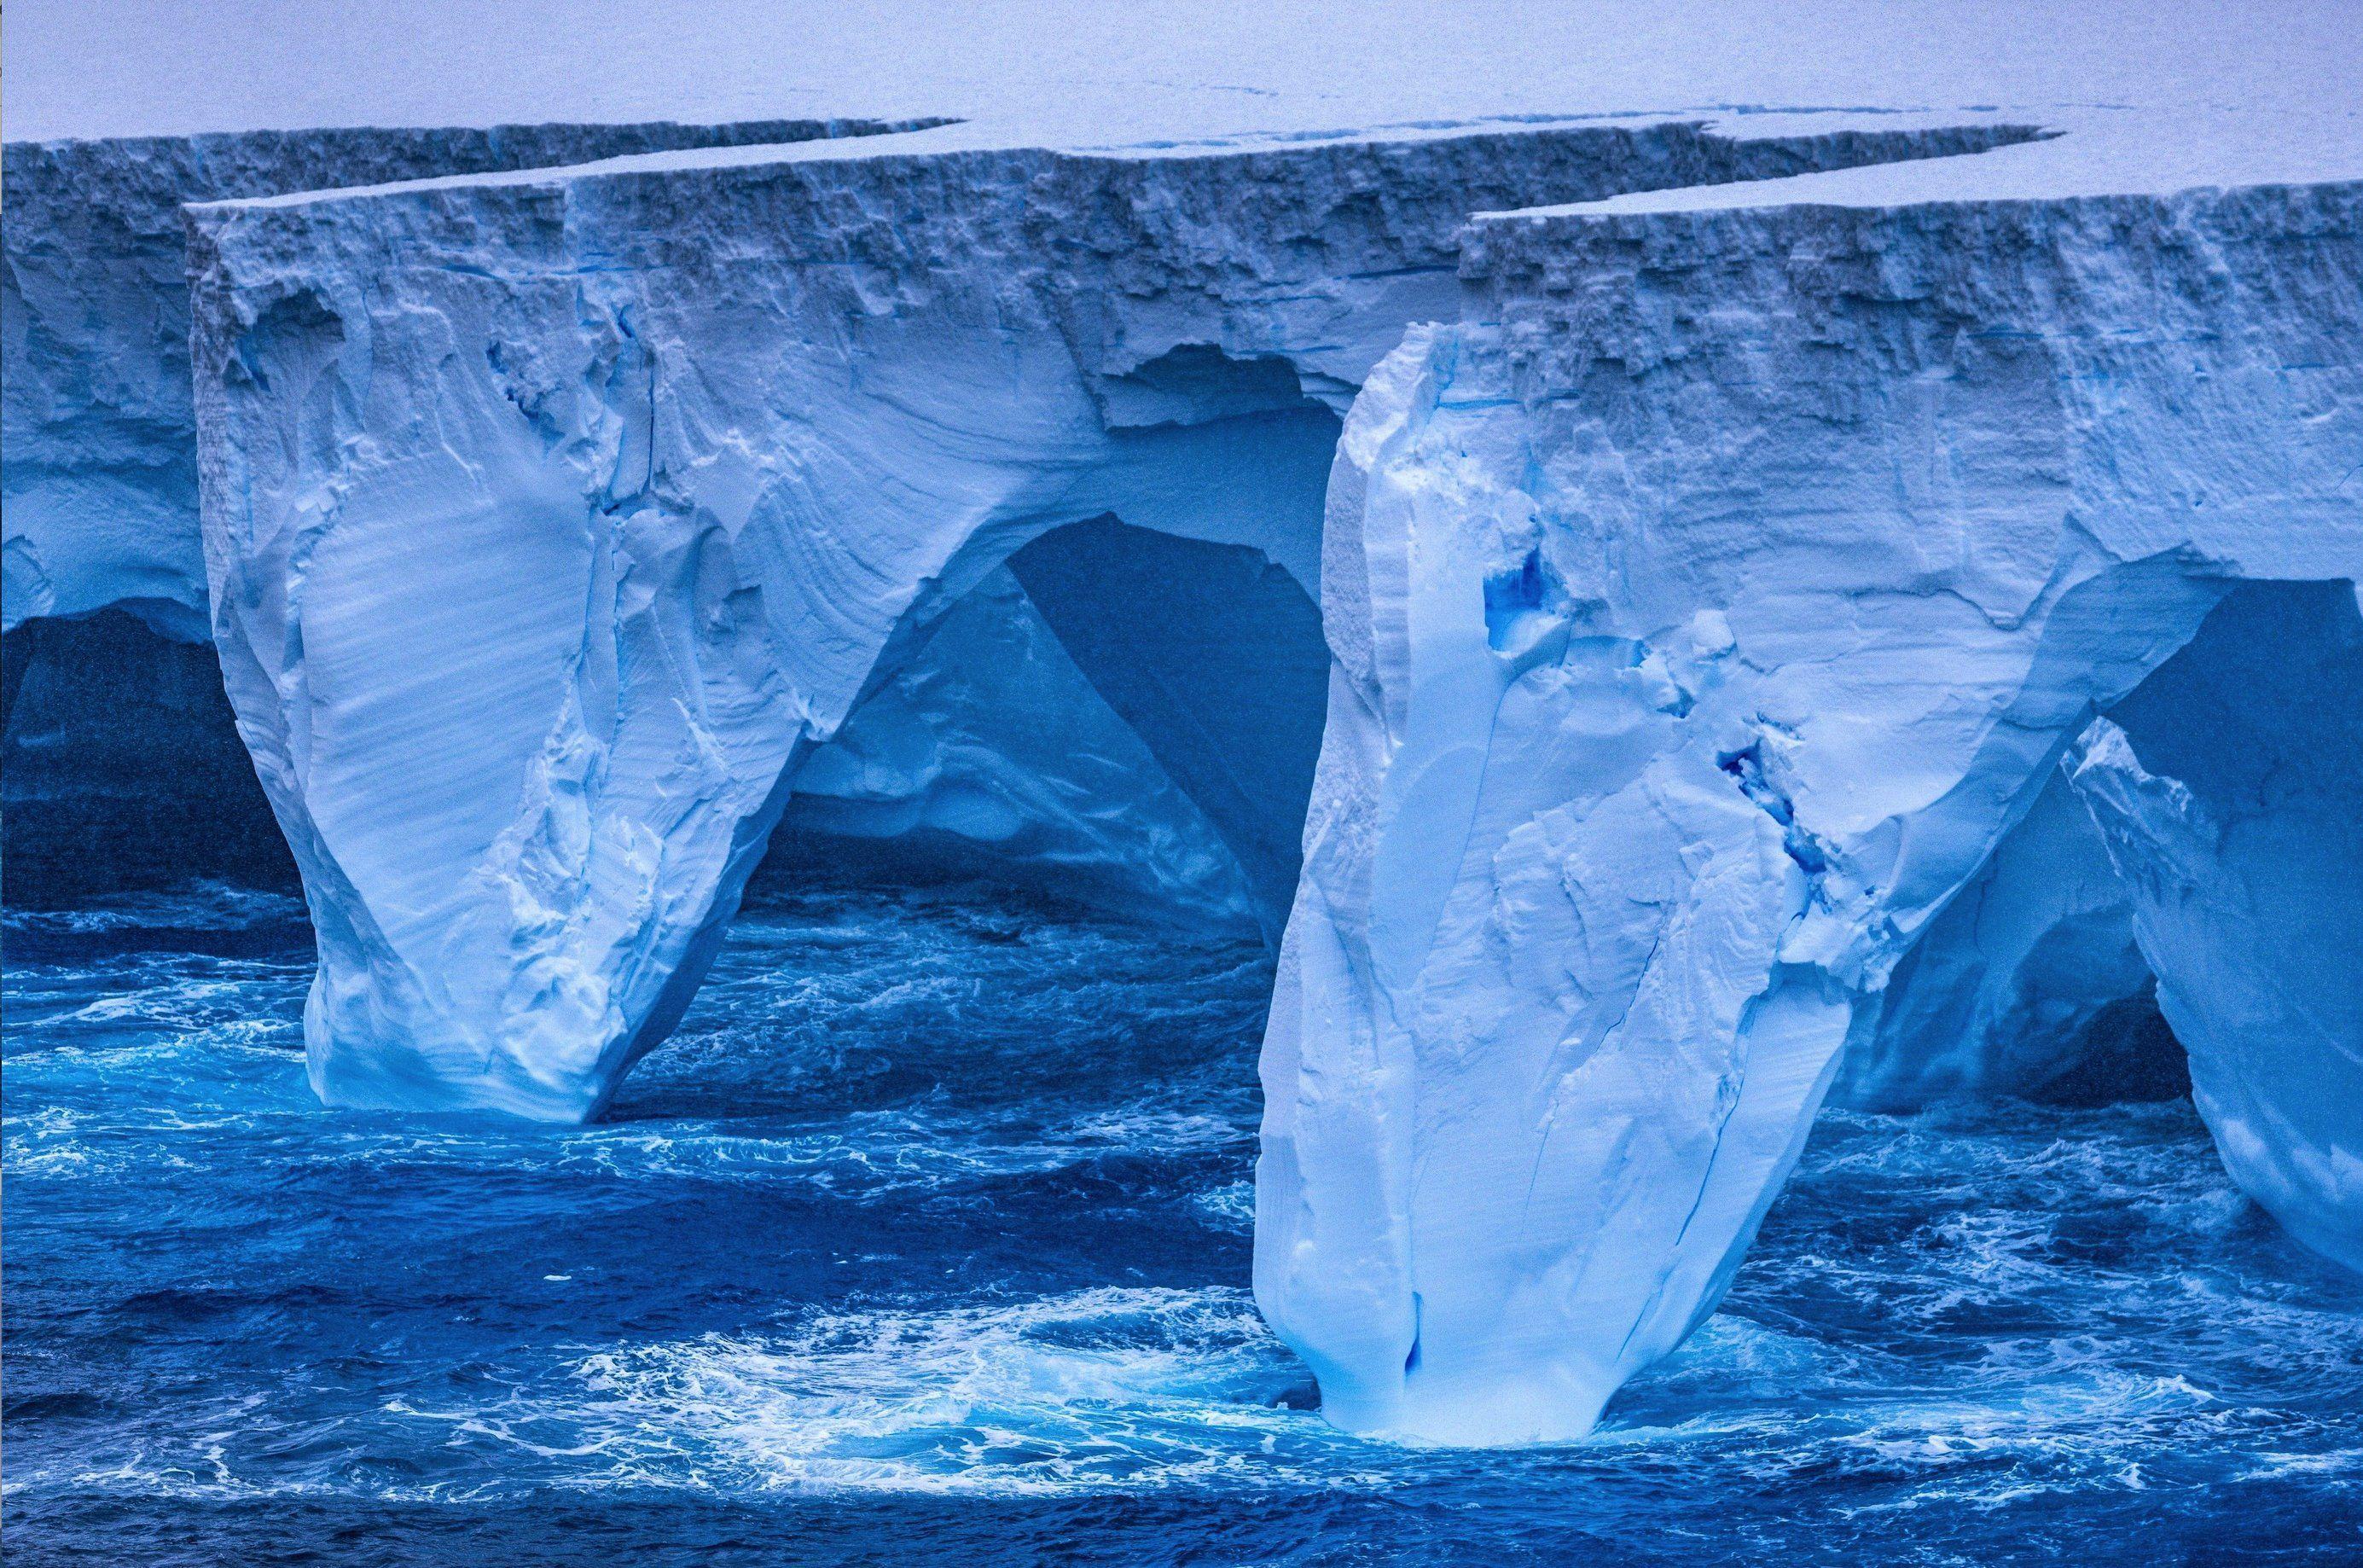 เกาะติดการเดินทางของภูเขาน้ำแข็งใหญ่ที่สุดในโลกในทวีปแอนตาร์กติกา จะไปสิ้นสุดที่ตรงไหน